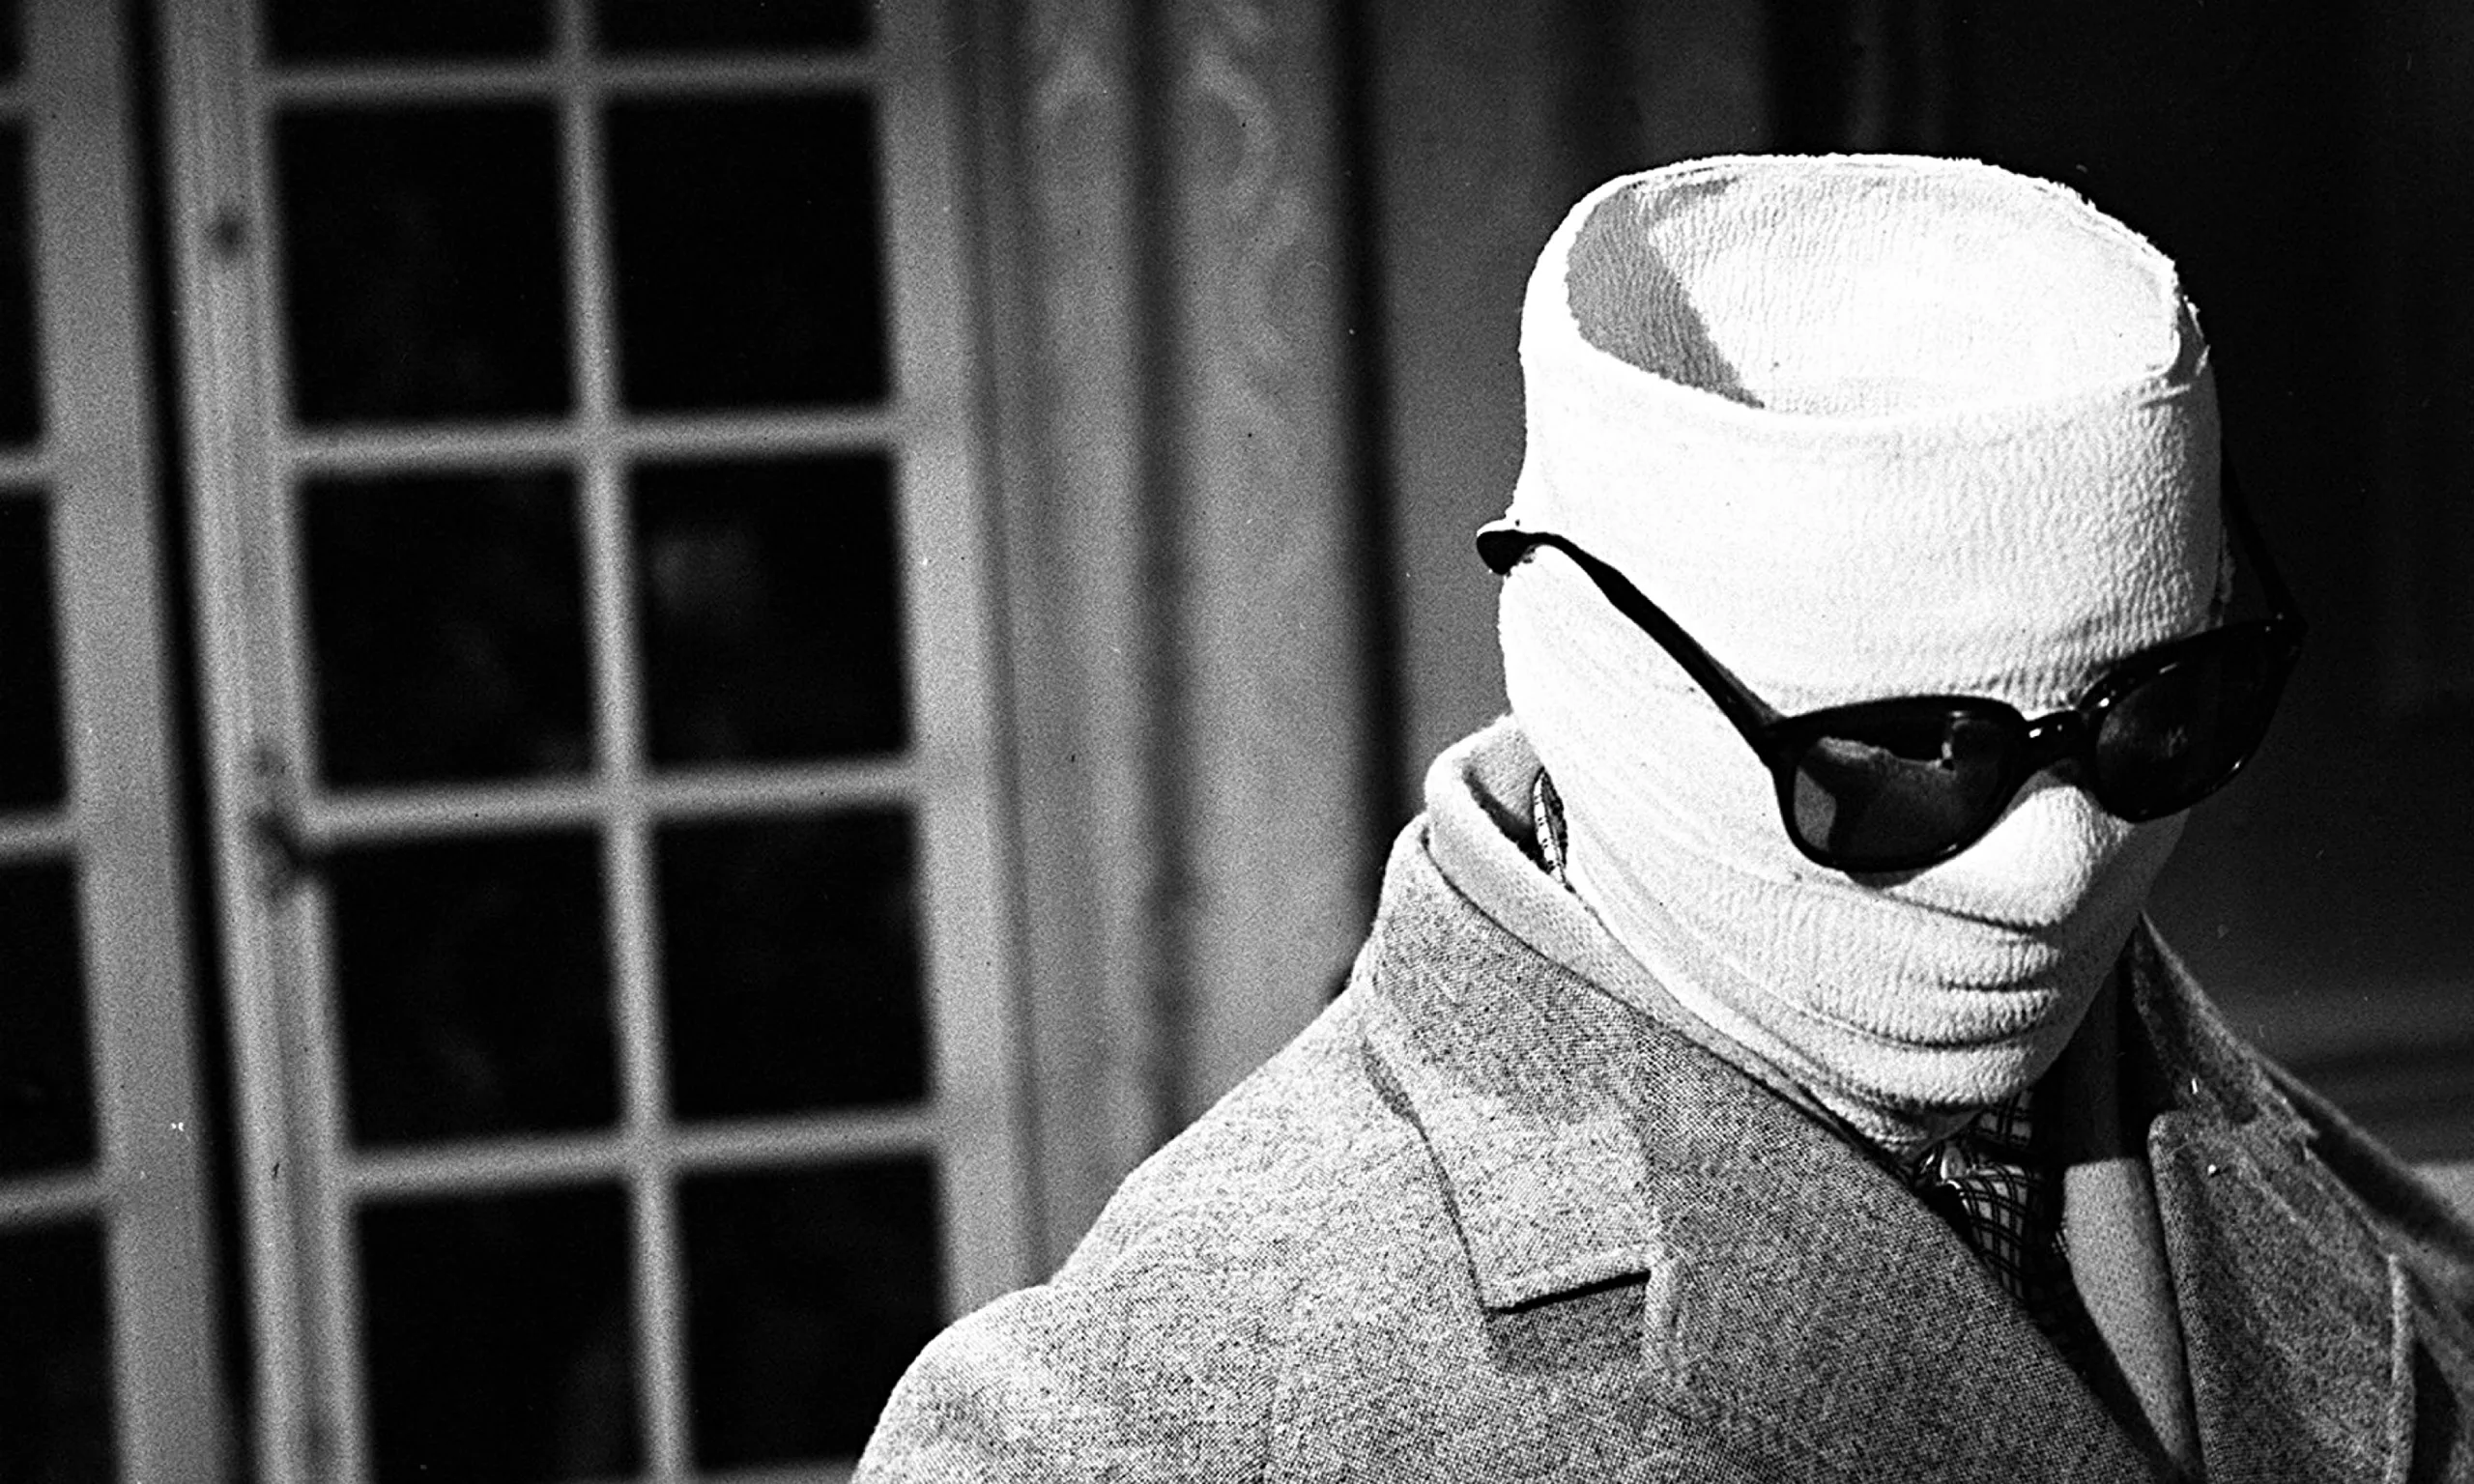 Цитата из х. ф. «Человек-невидимка». Режиссер Джеймс Уэйлом 1933 год.